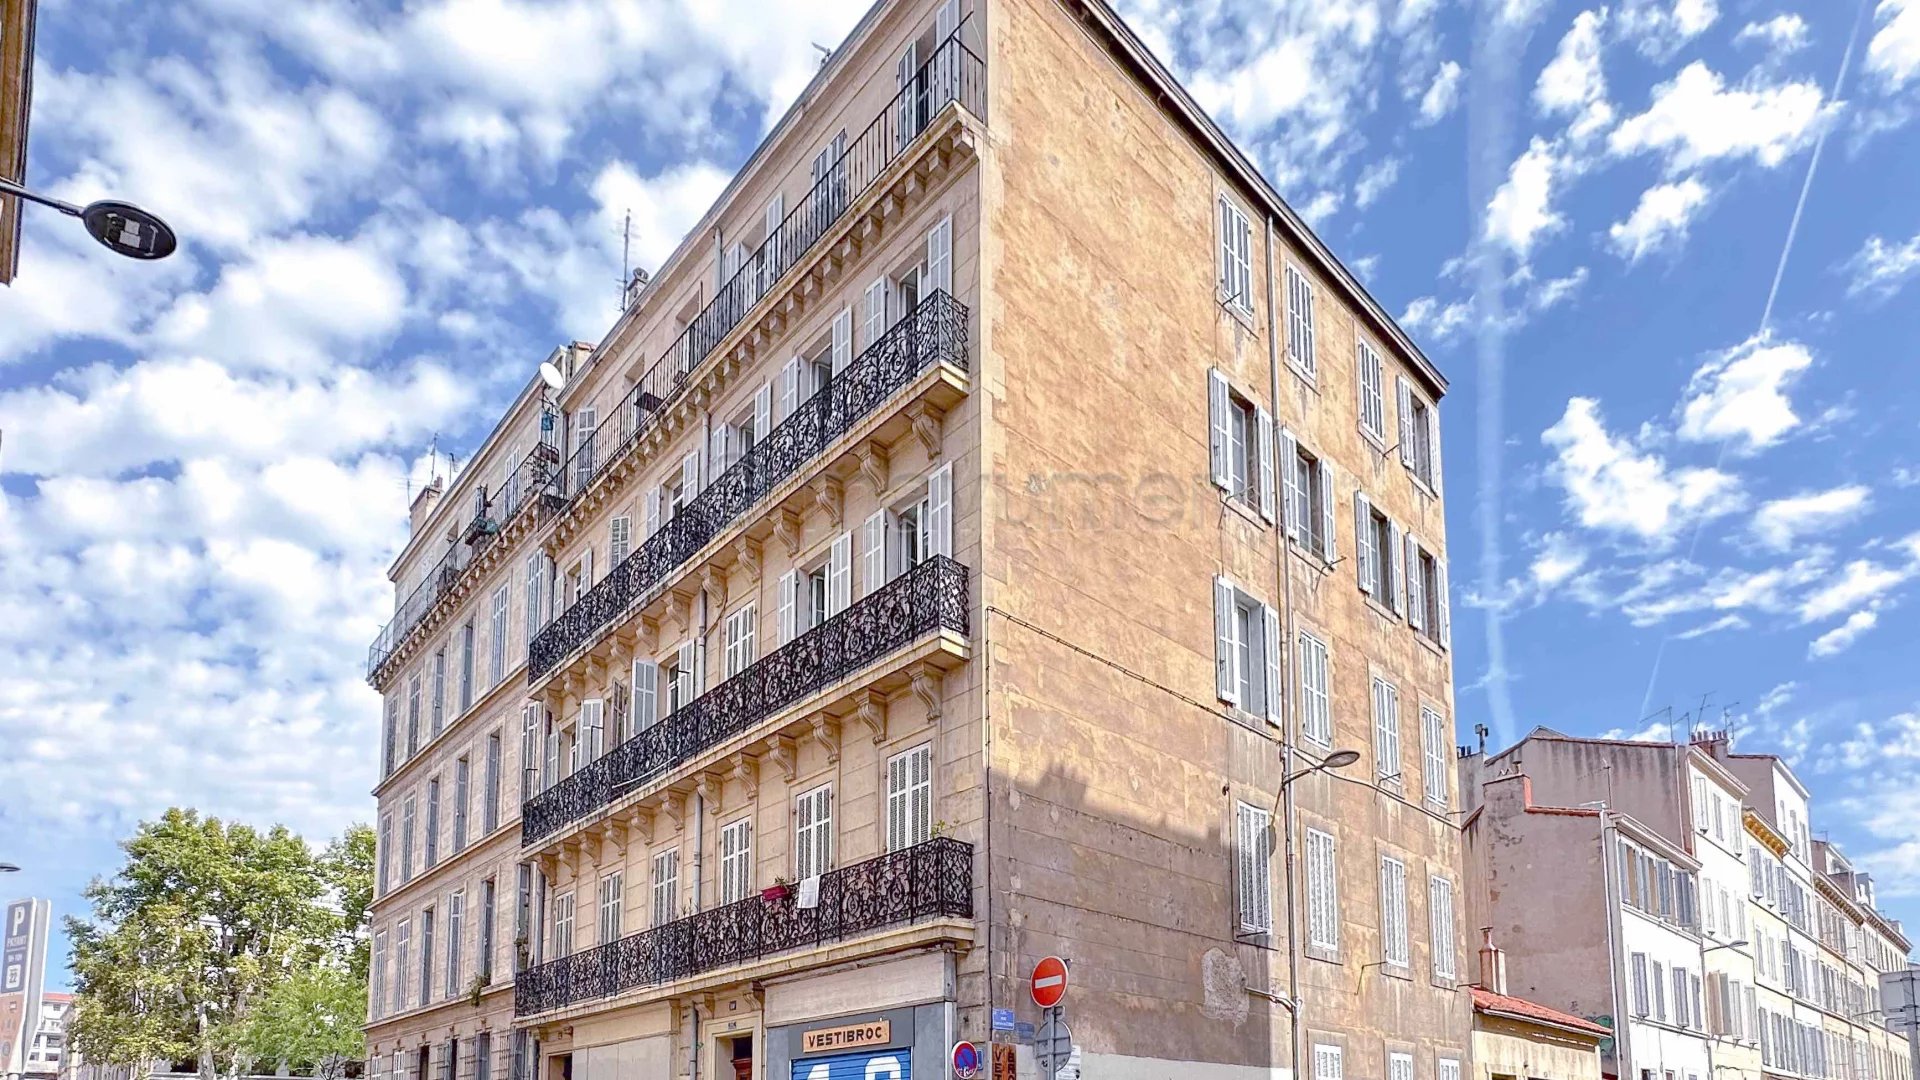 Sale Apartment - Marseille 5ème Le Camas